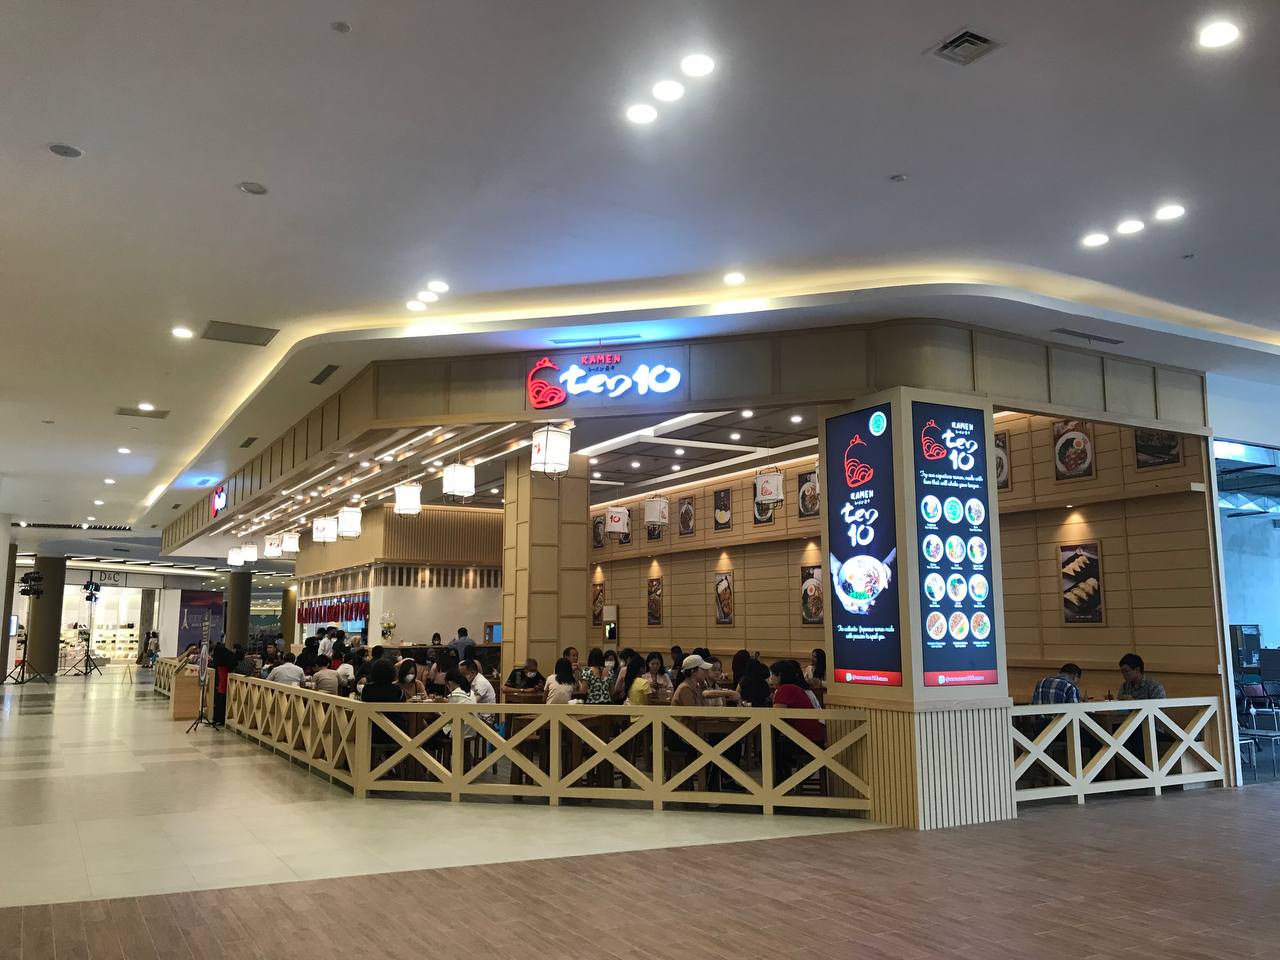 Promo Heboh Berbagai Outlet Kuliner di One Mall Batam, Diskonnya Gede! 